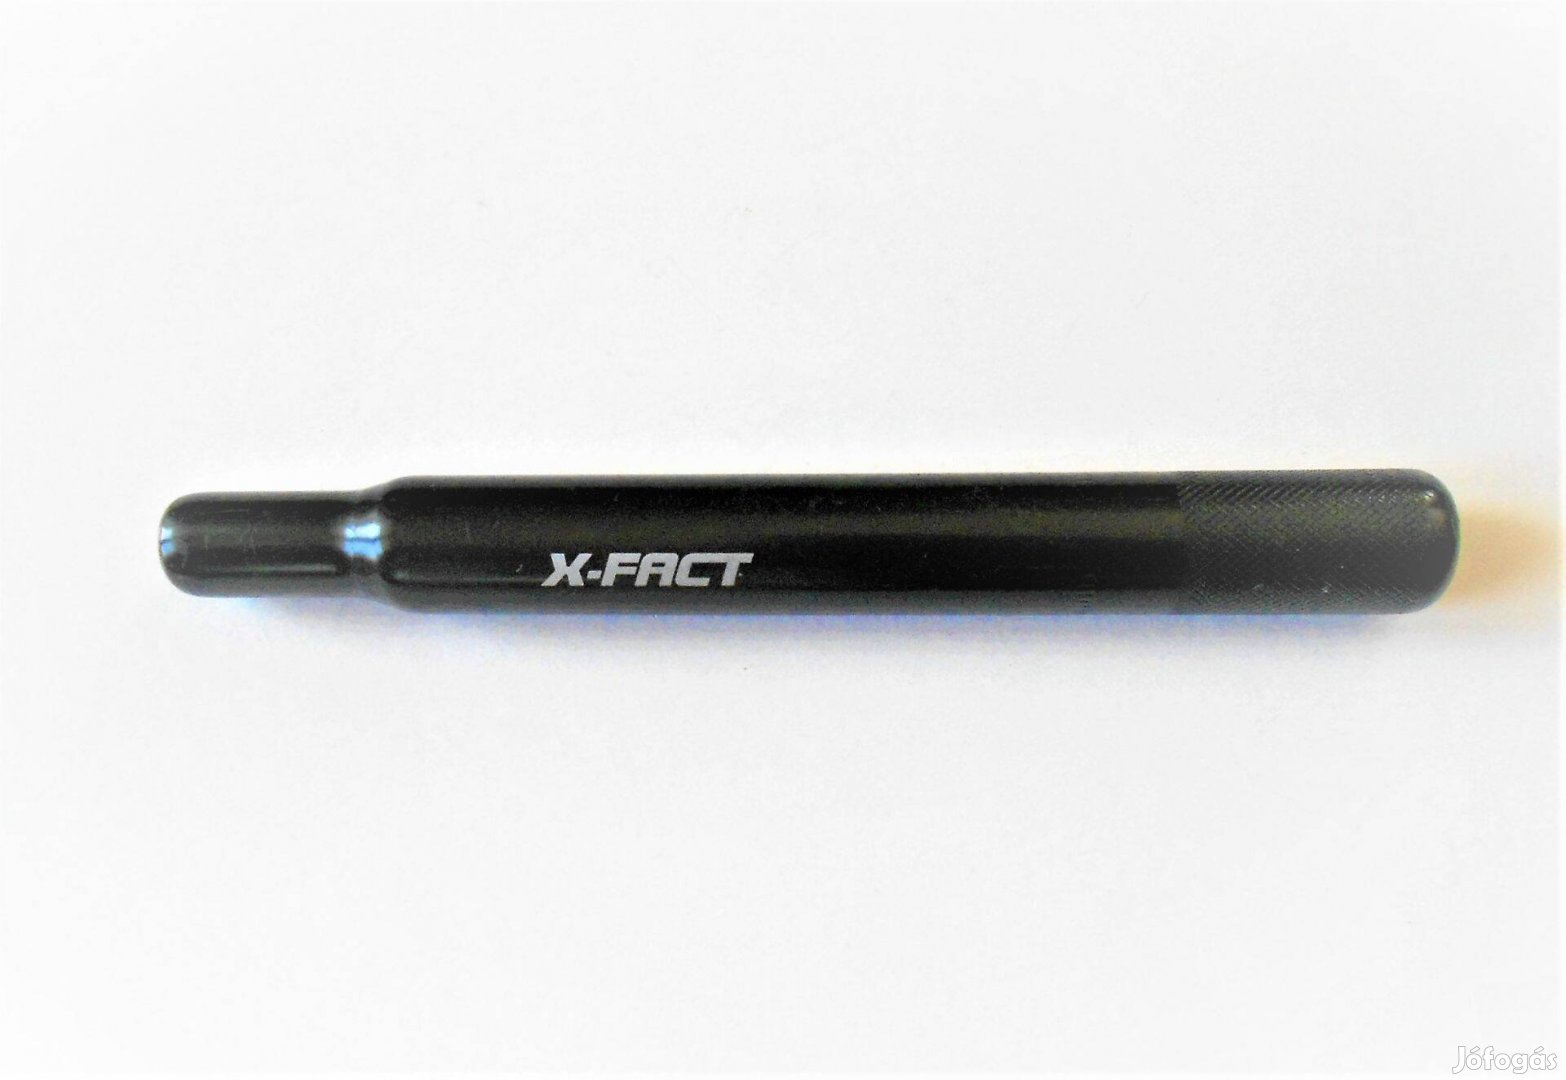 X-Fact nyeregcső fekete. Hosszúság: 25.5 cm